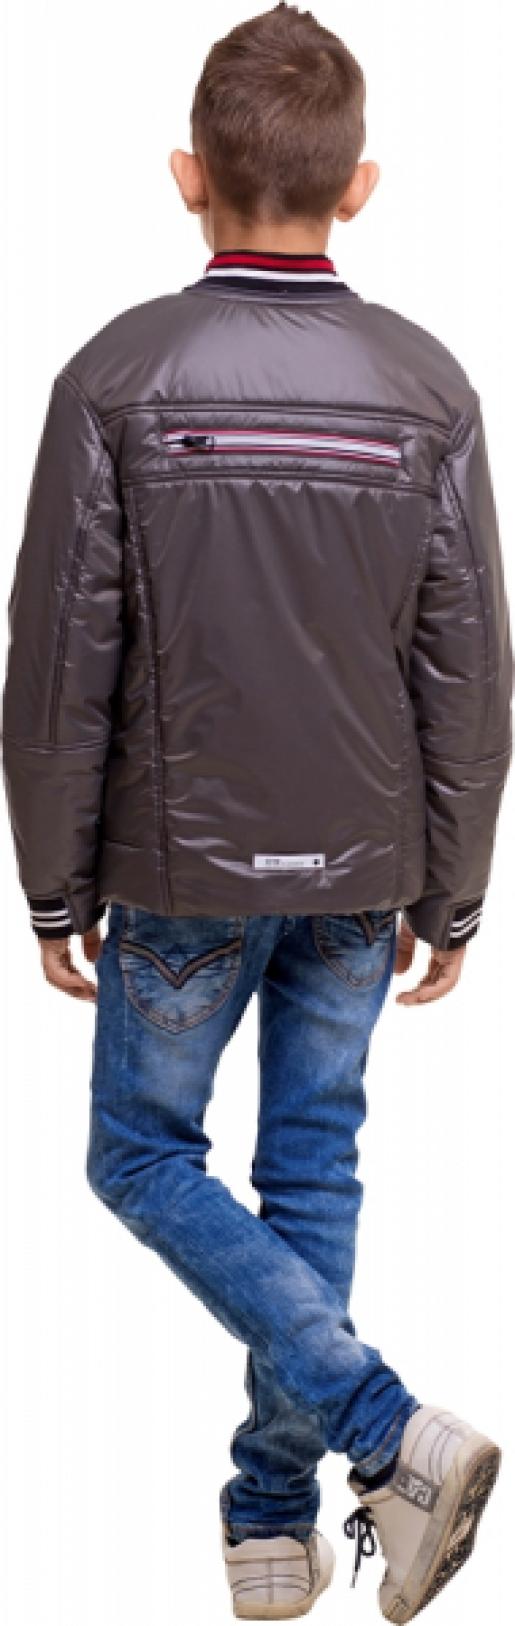 Куртка для мальчика - Фабрика верхней детской одежды G n K